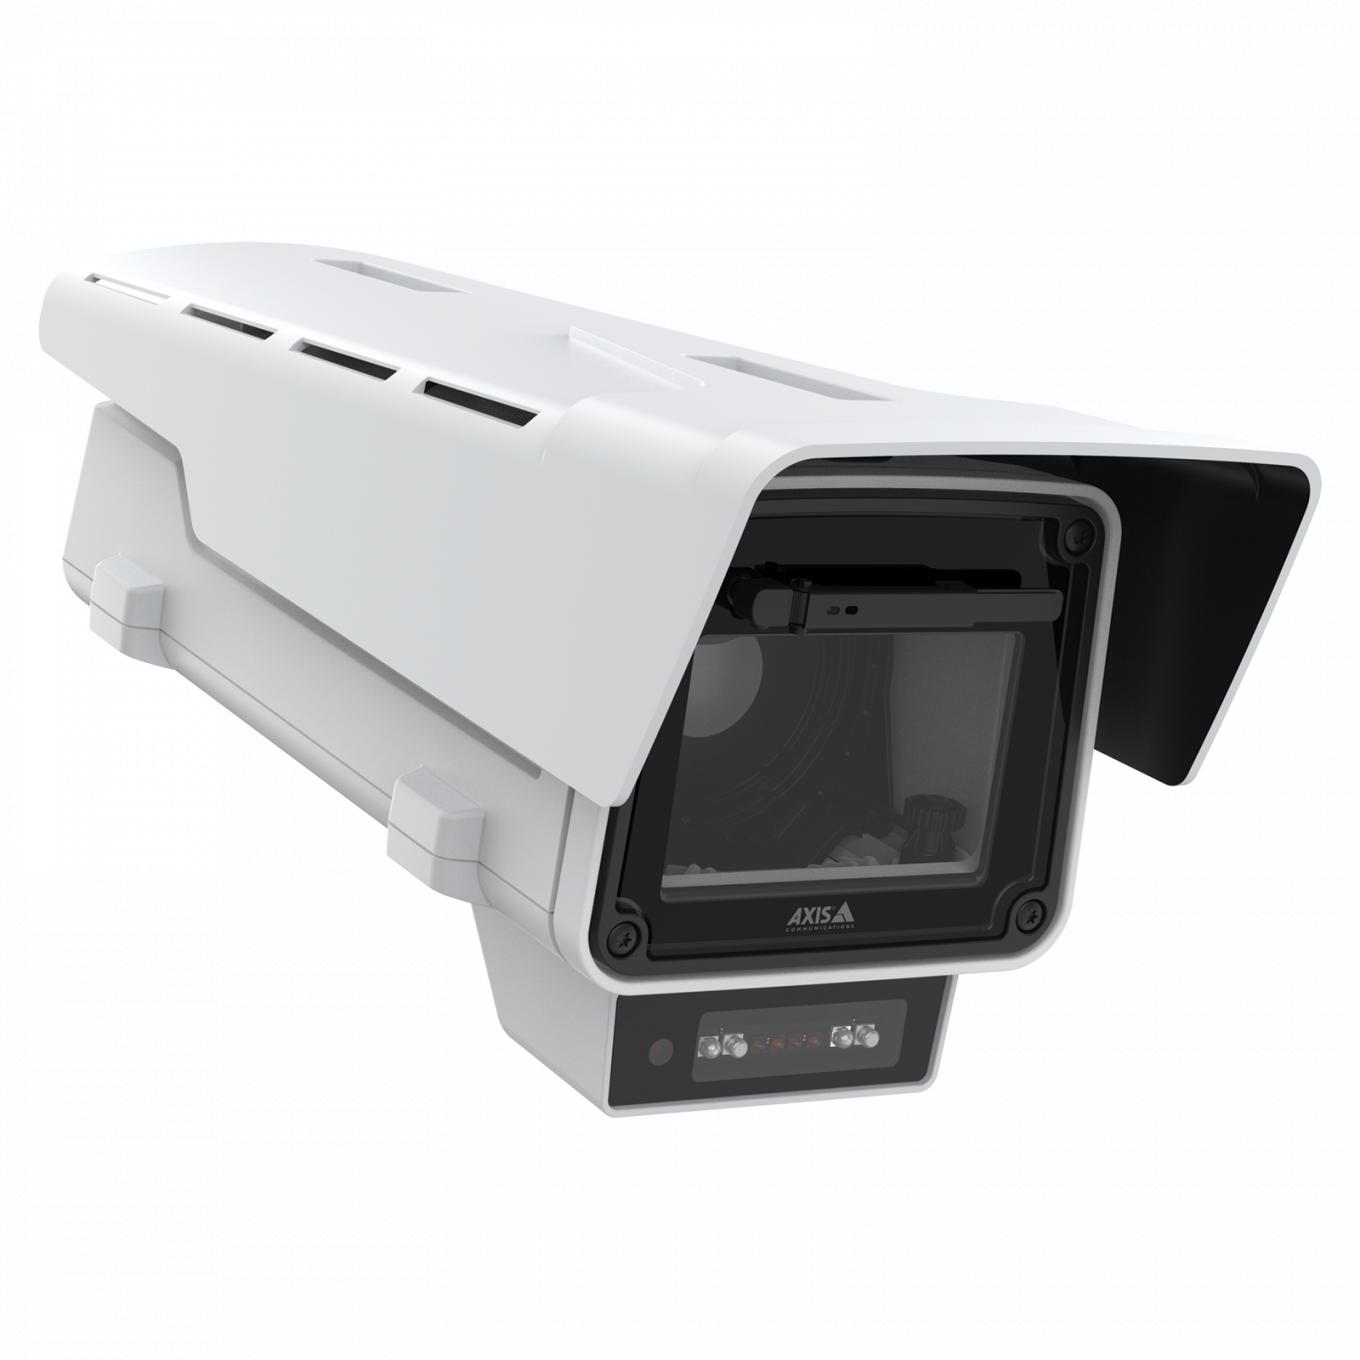 即納/在庫有り 02164-031 AXIS Q1656-B 固定ネットワークカメラ プロによるサポート付き 防犯カメラ 